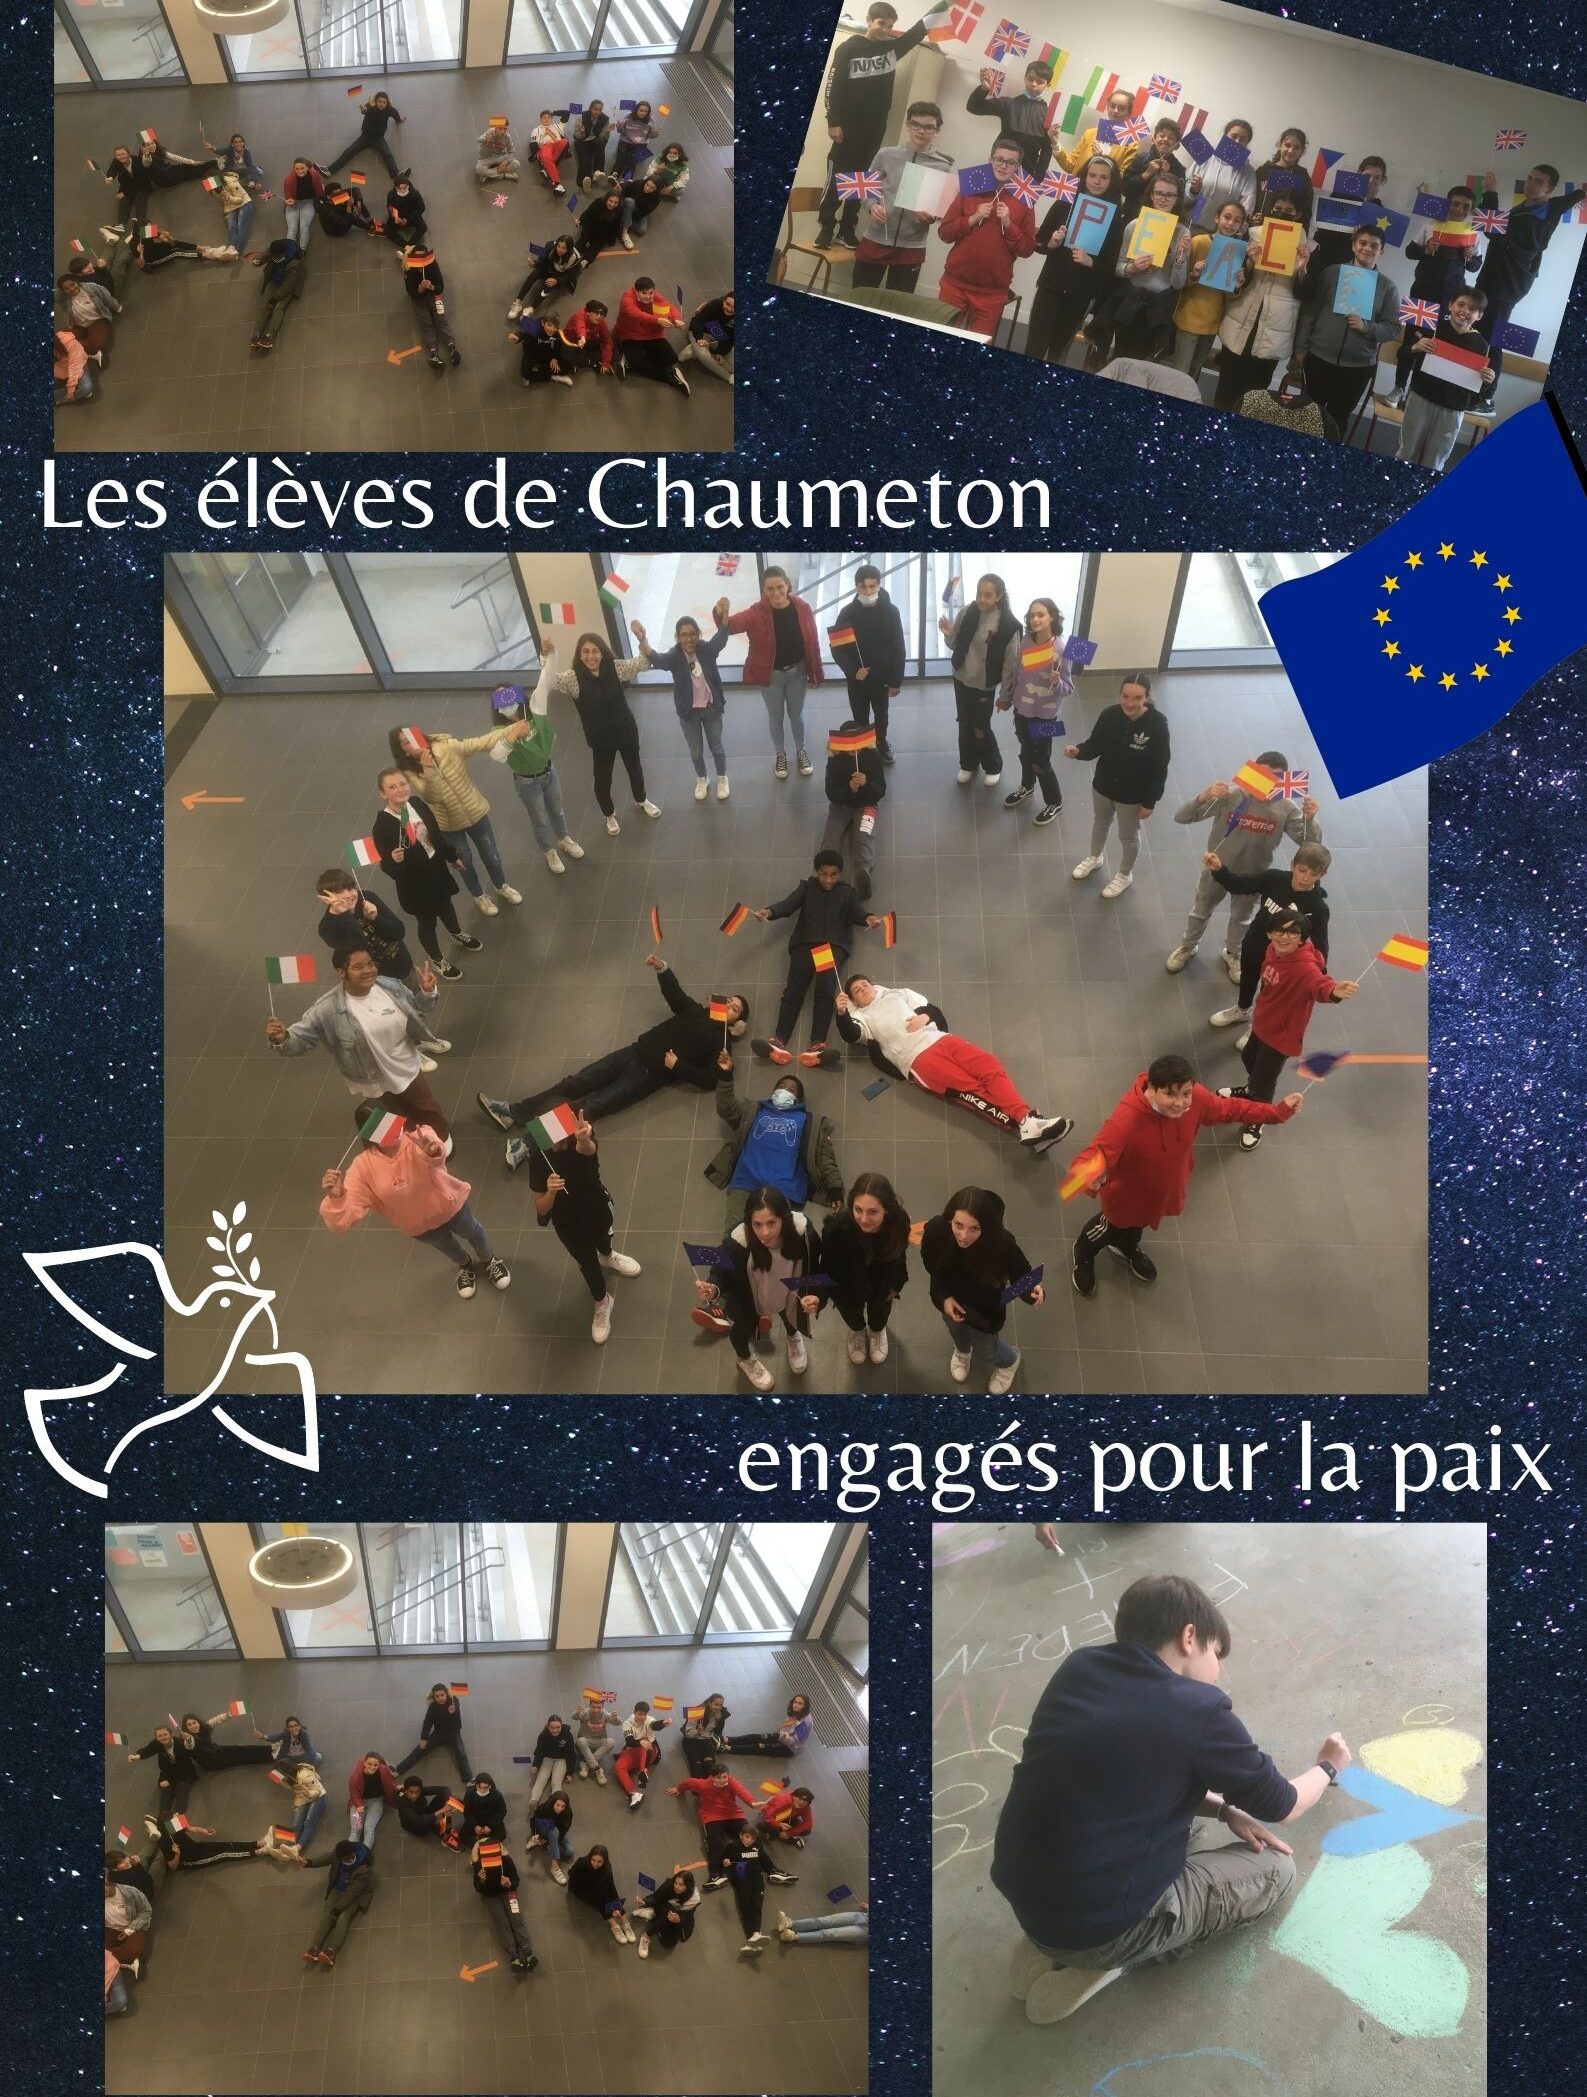 Les élèves de Chaumeton engagés pour la paix.jpg